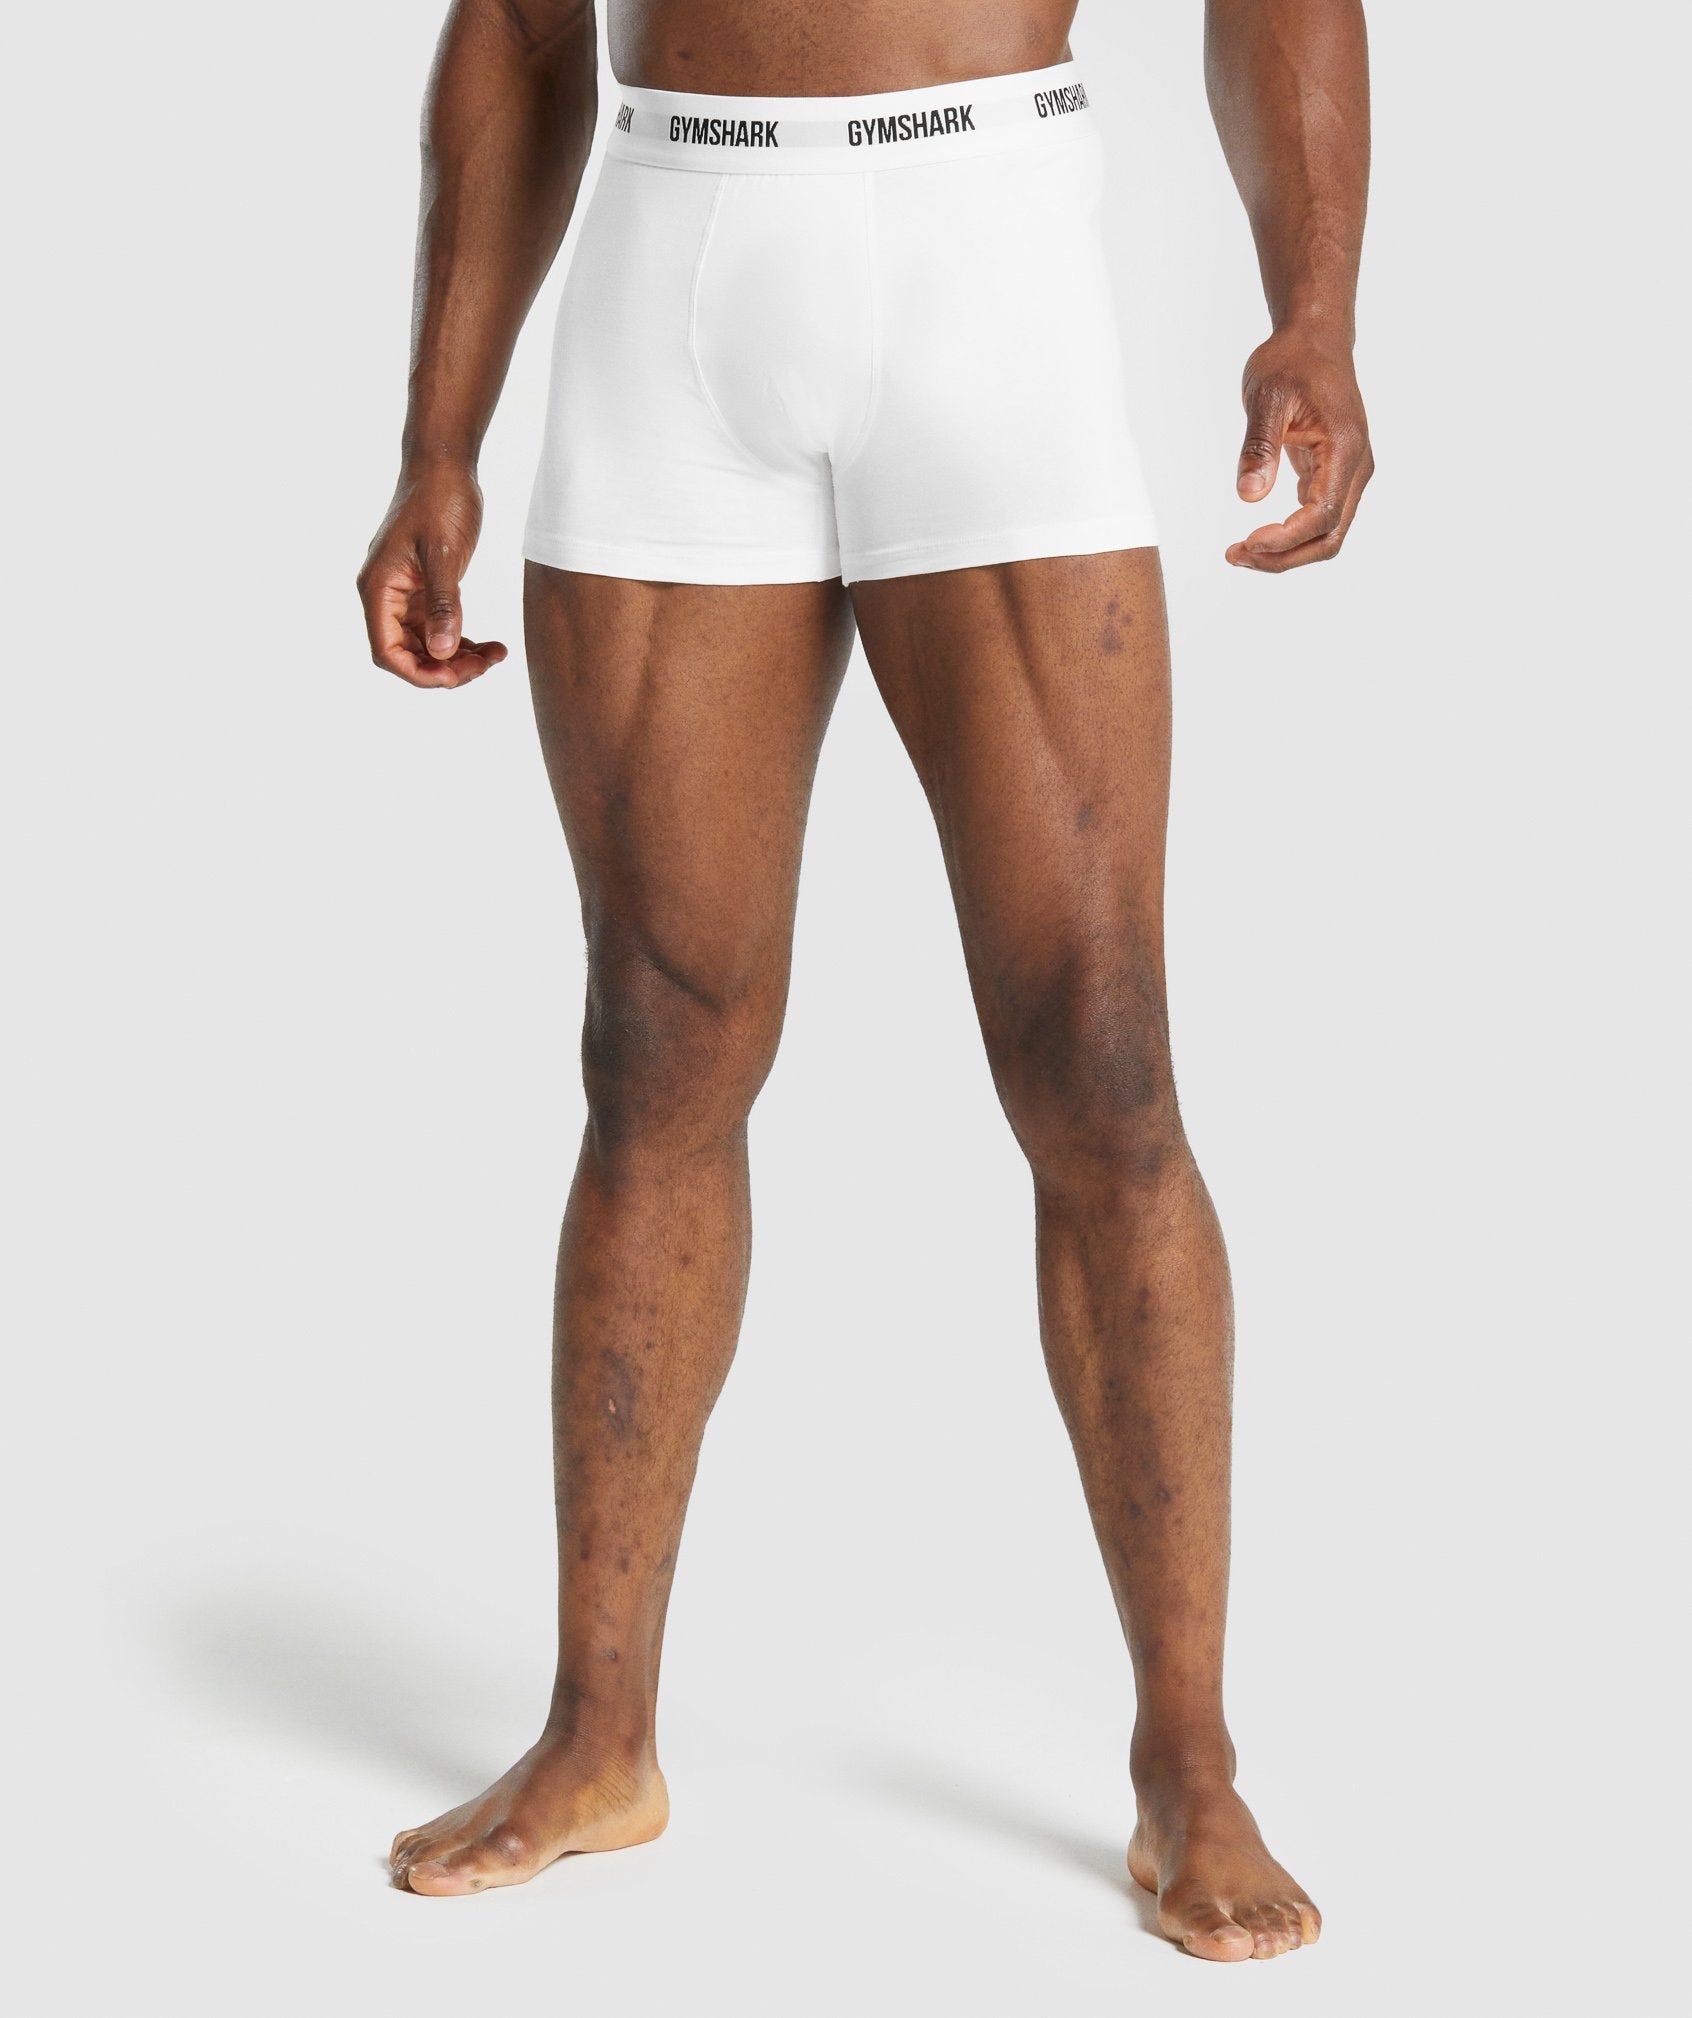 Athletic Works Men's Long Leg Boxer Briefs Underwear, 3 Pack - Rich Bl –  VIPOutlet